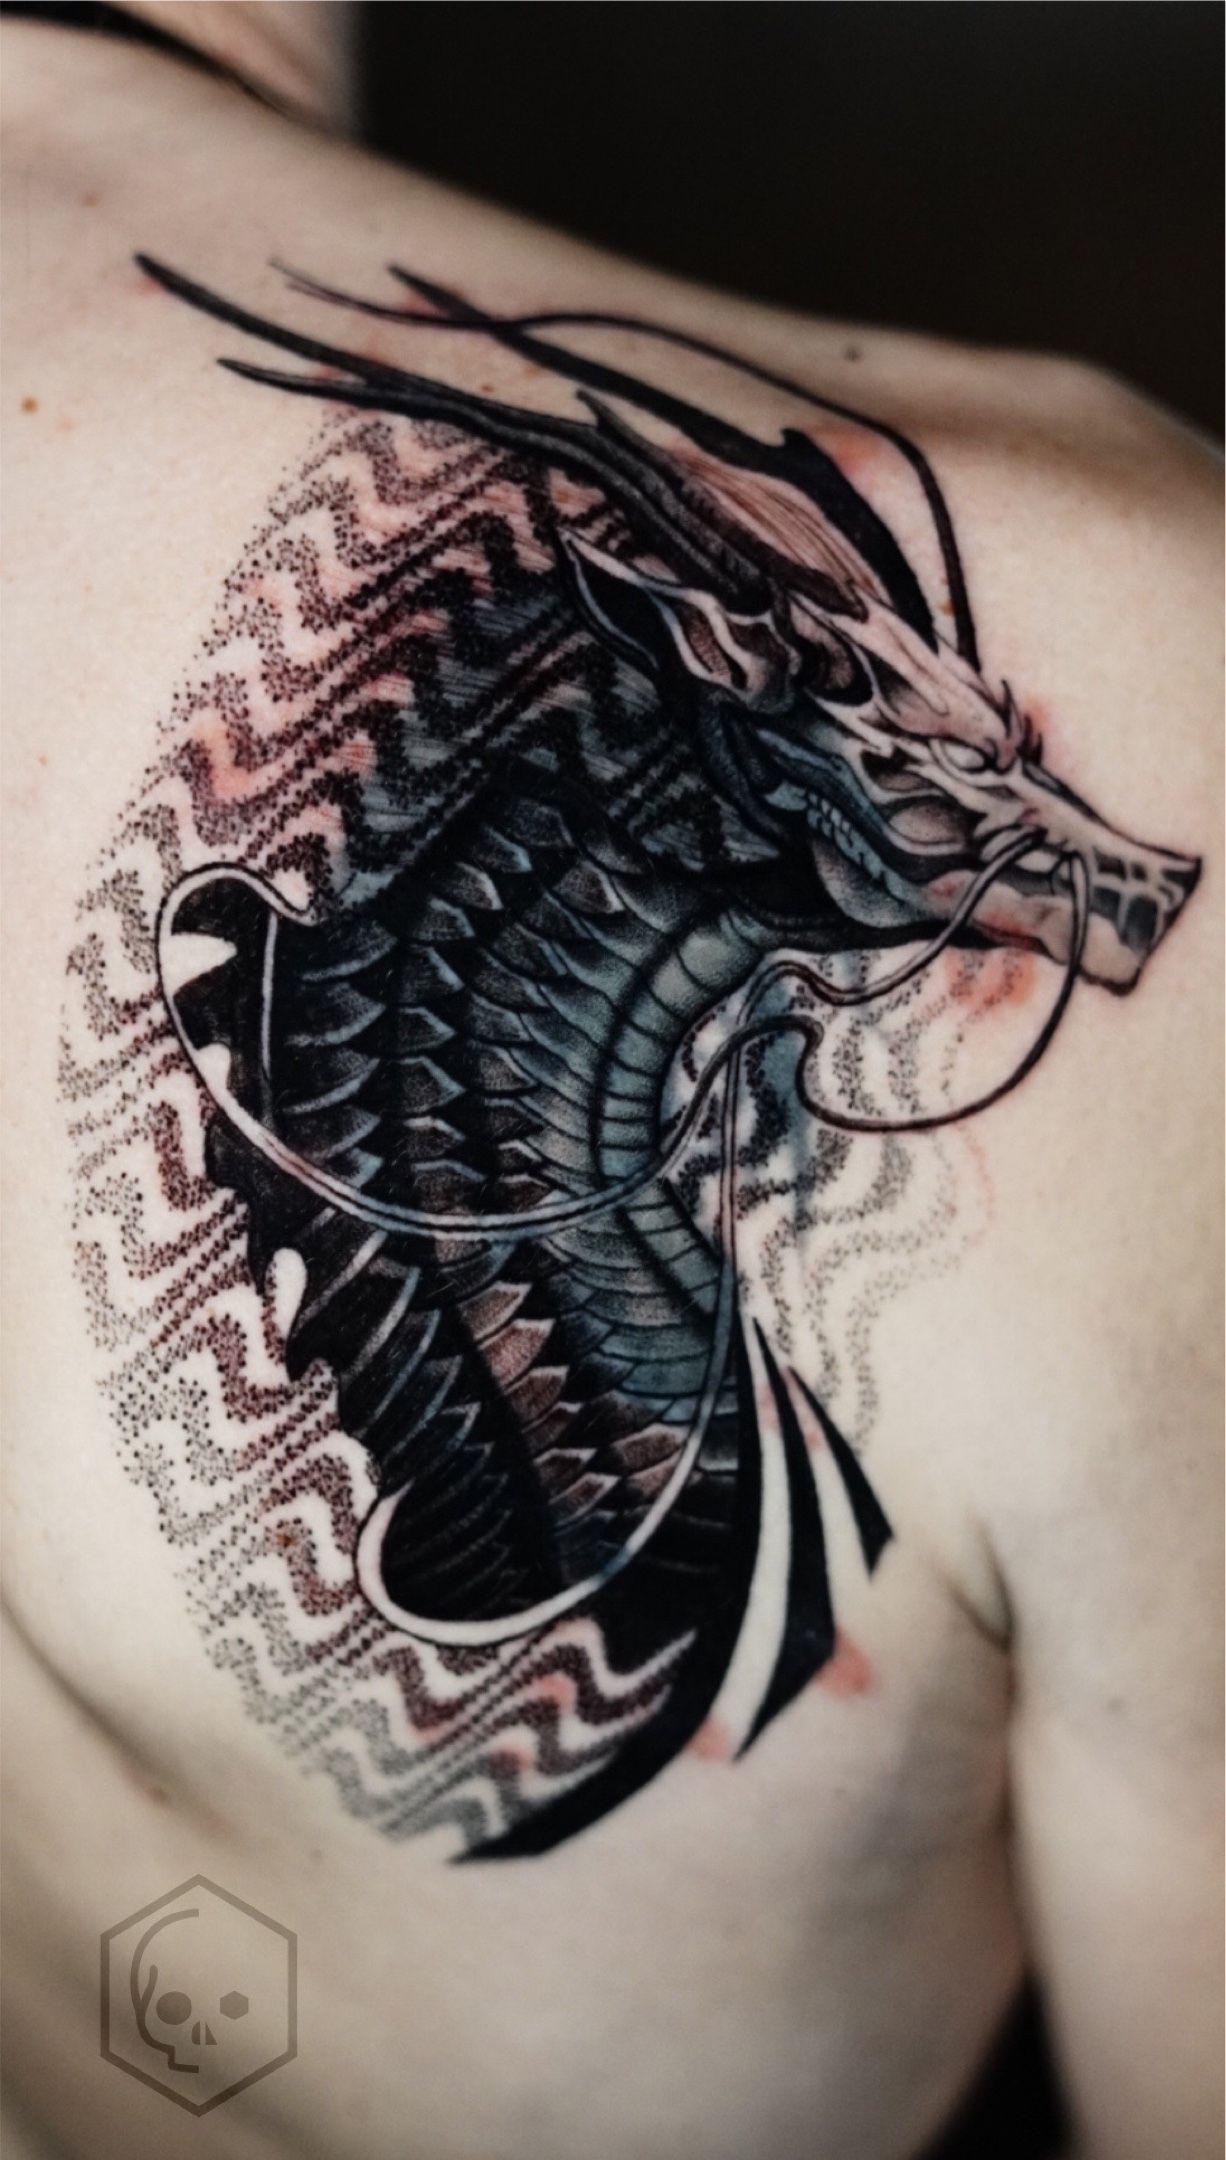 Geometric Dragon Tattoo Idea  BlackInk